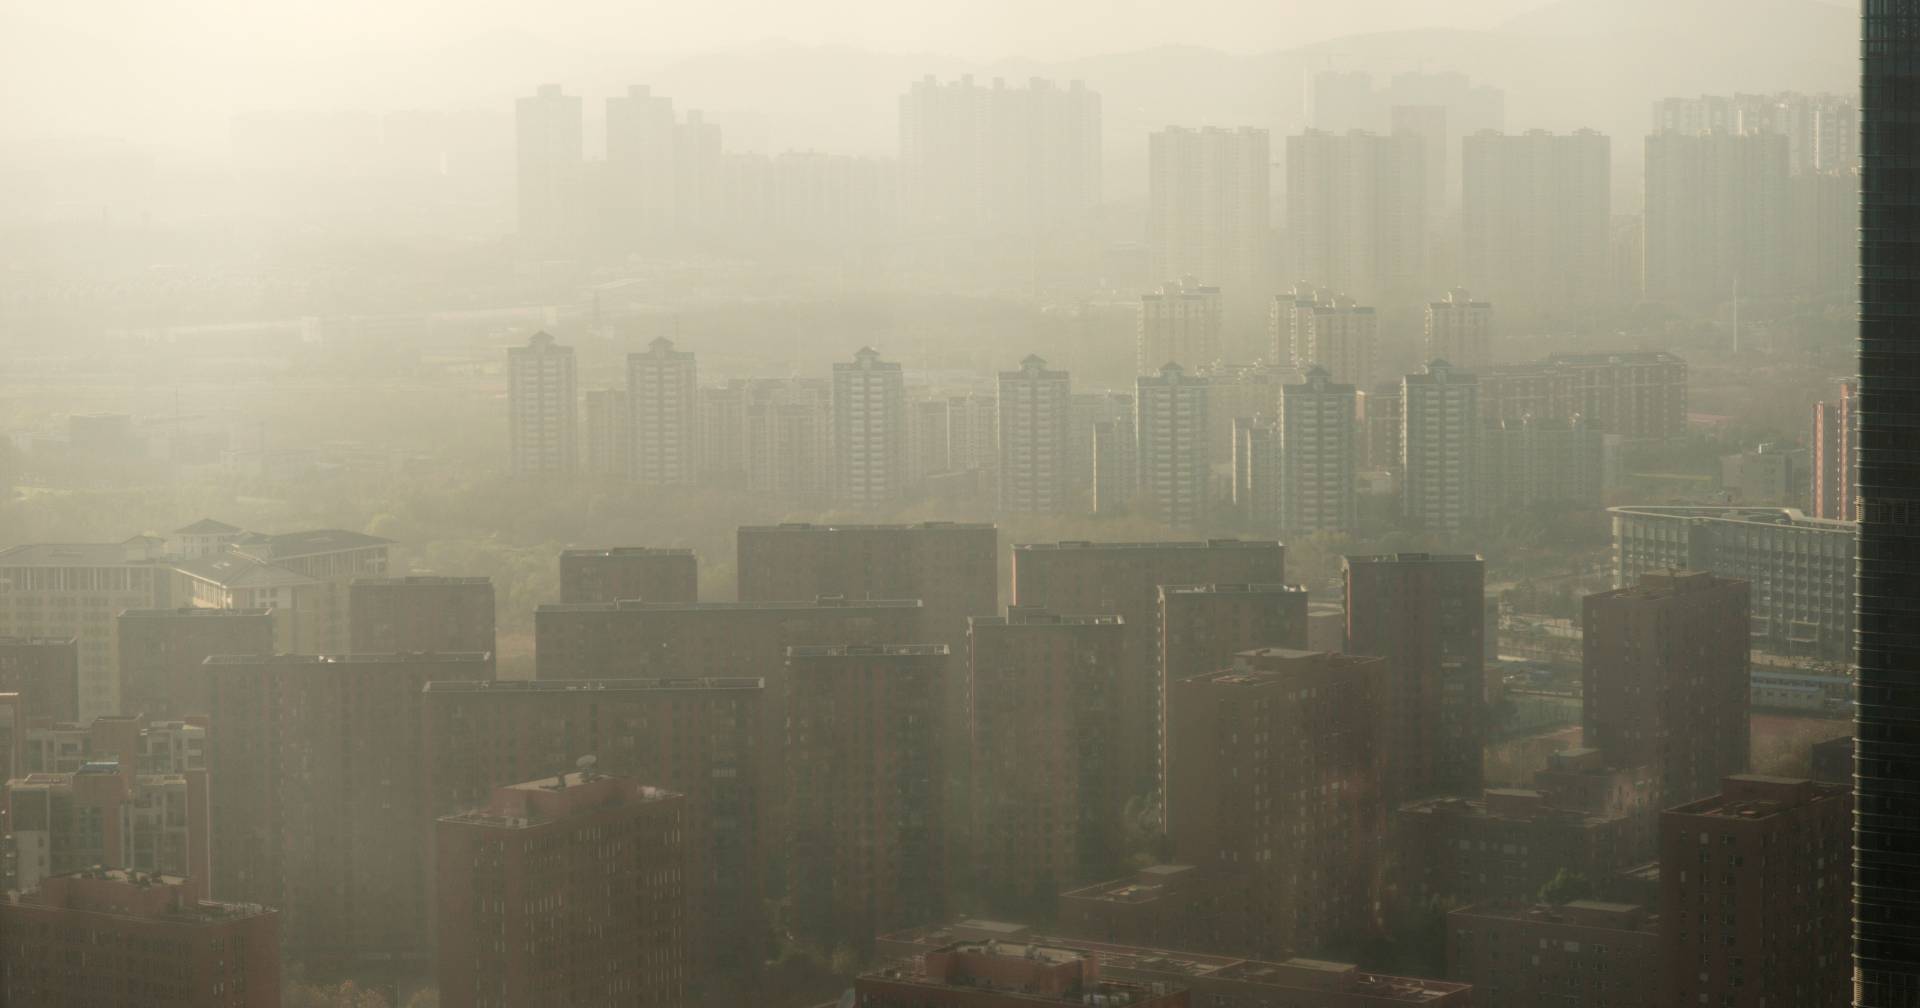 Descubra qué ciudades y países tienen el aire más contaminado del mundo